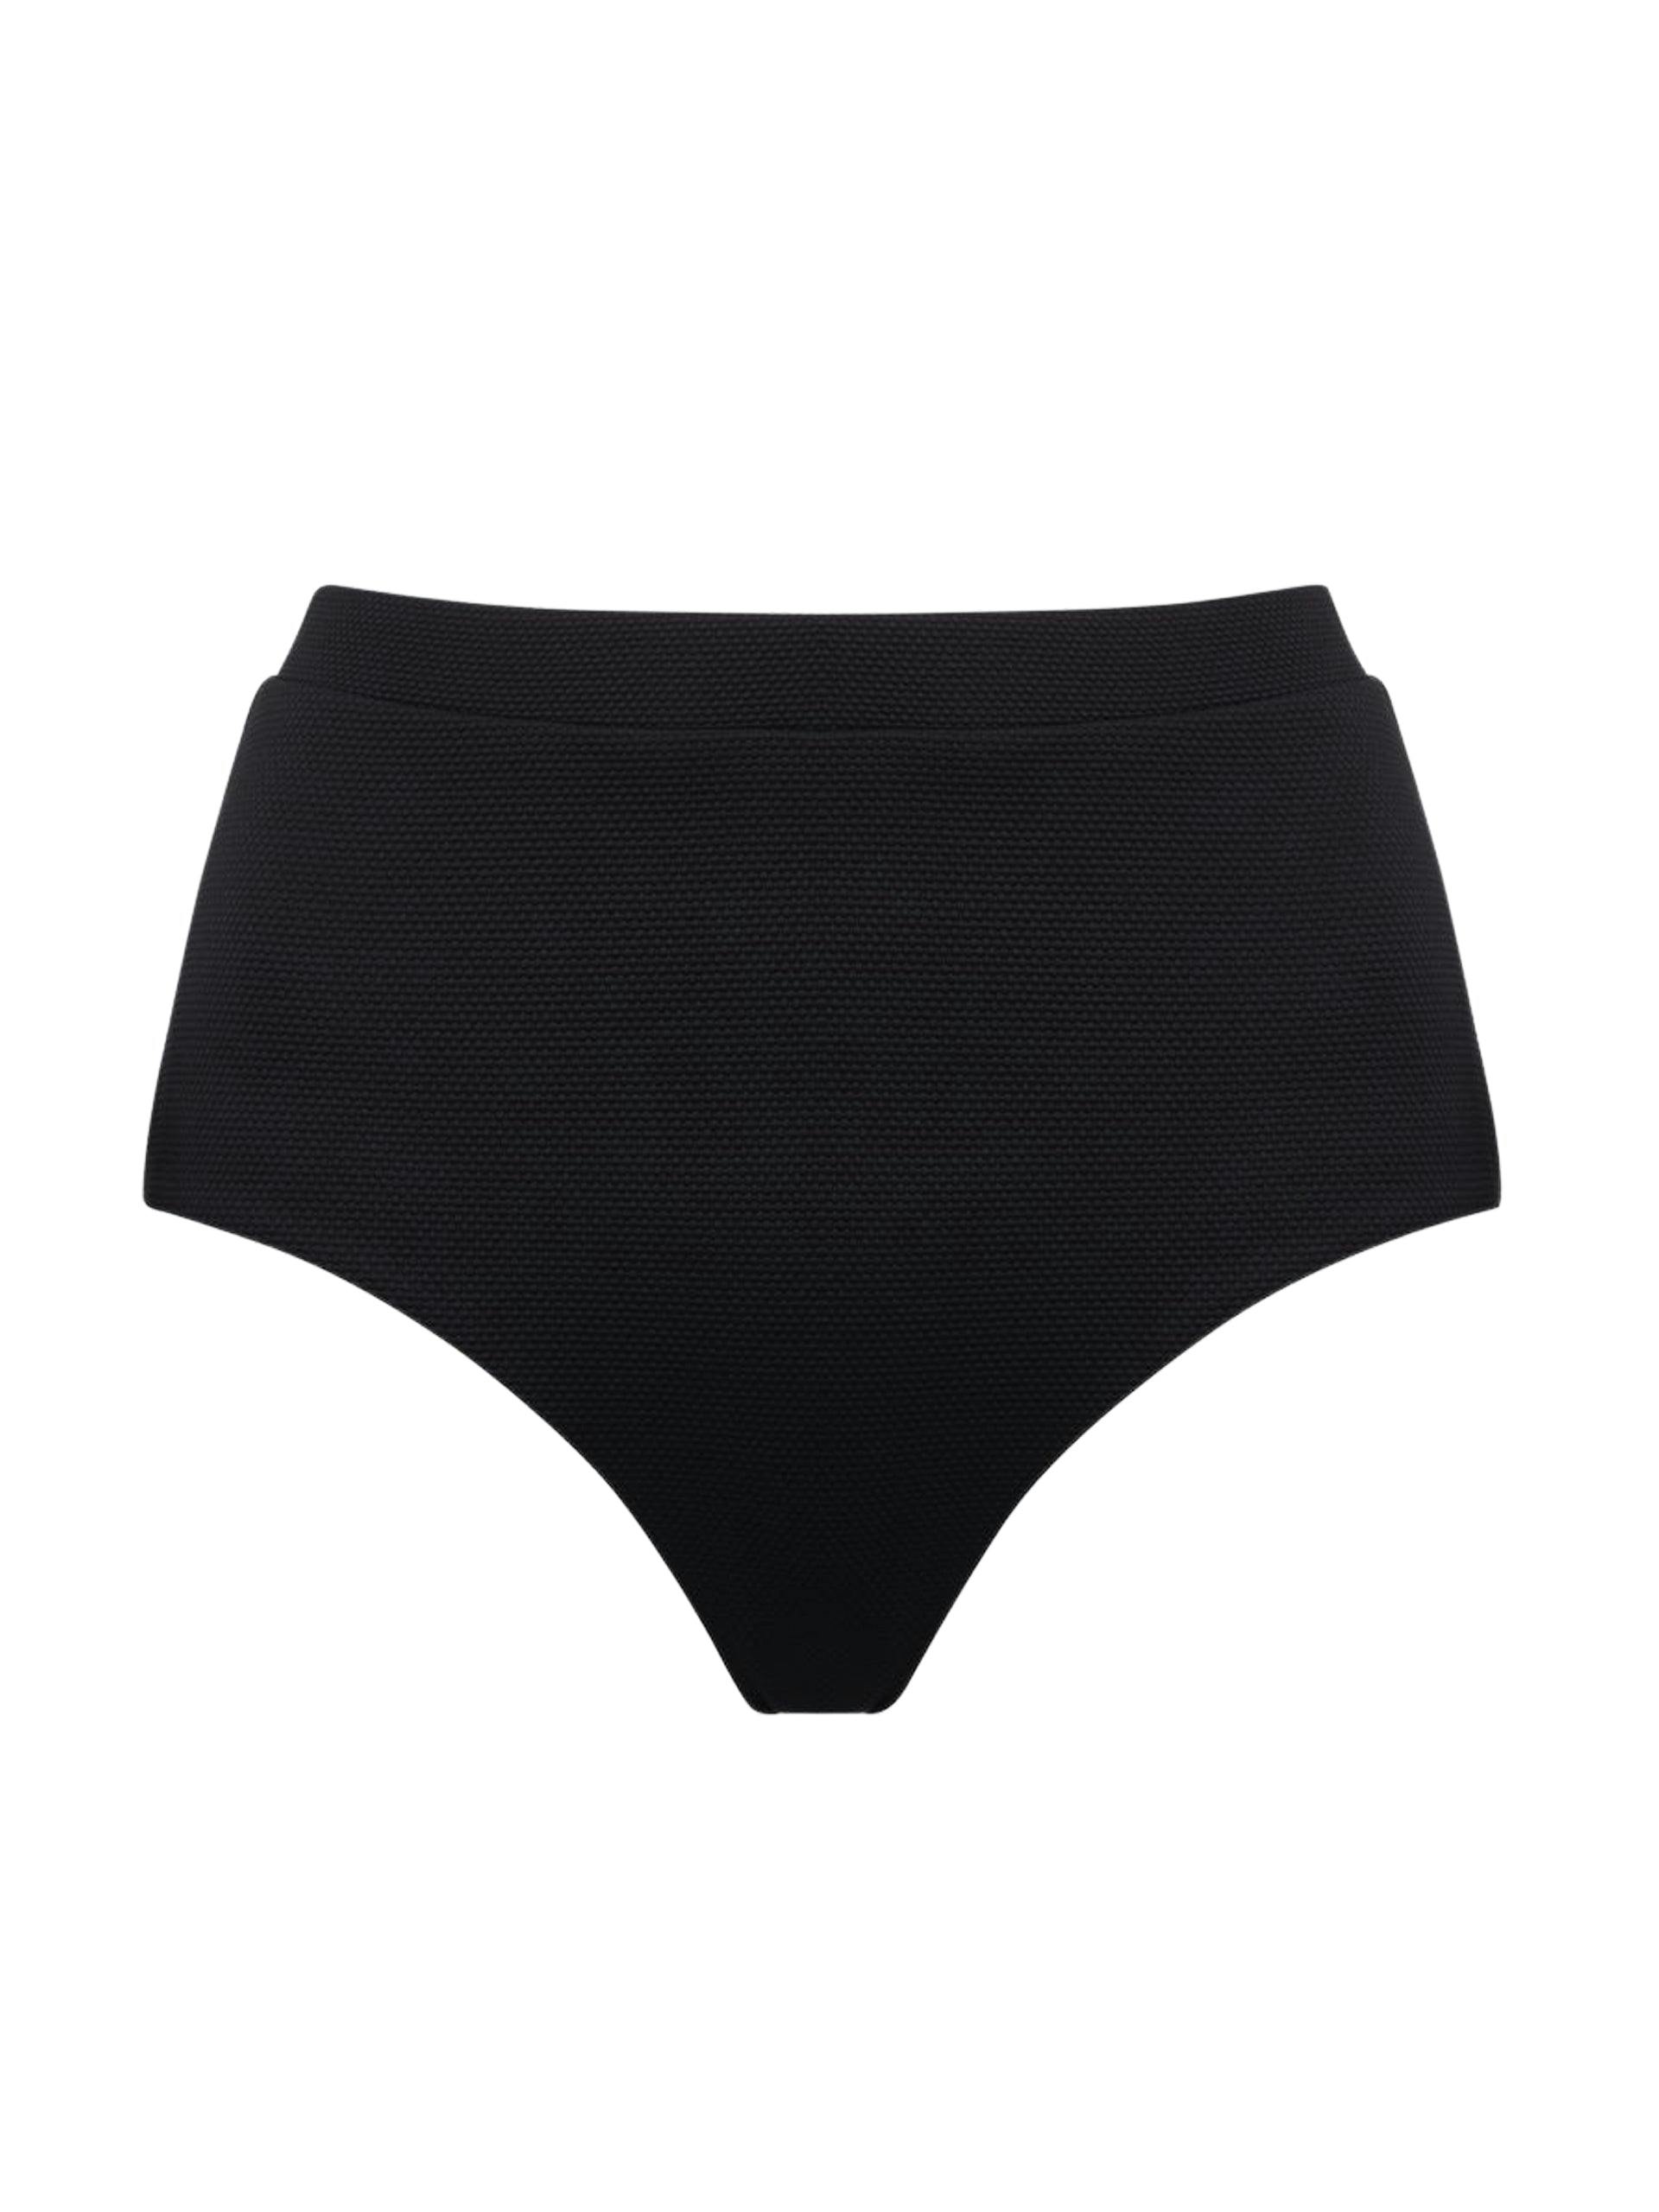 Black high-waisted Lucinda bikini bottoms